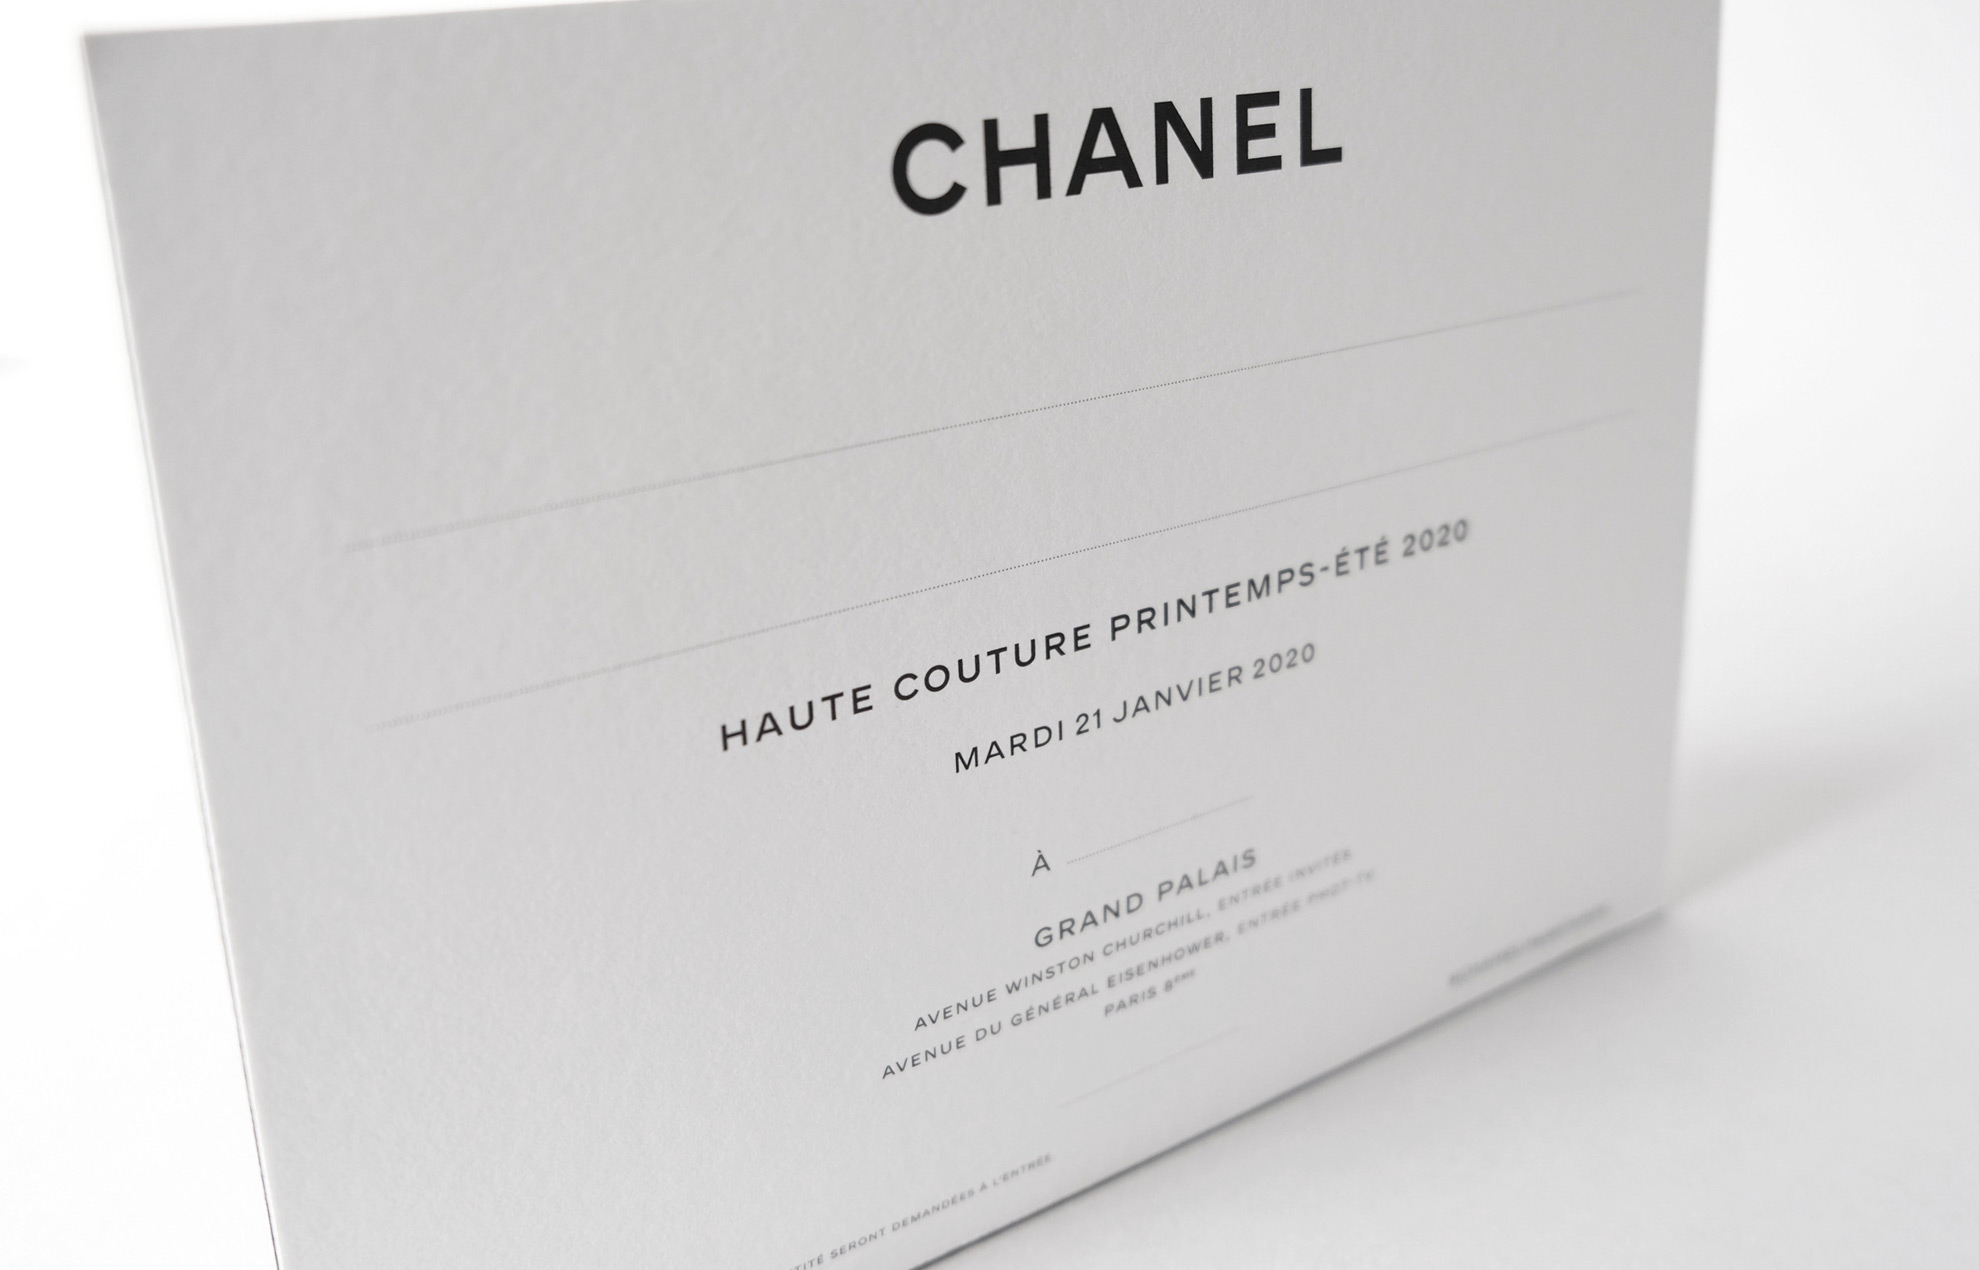 Louis Vuitton invitation  Fashion show invitation, Card design